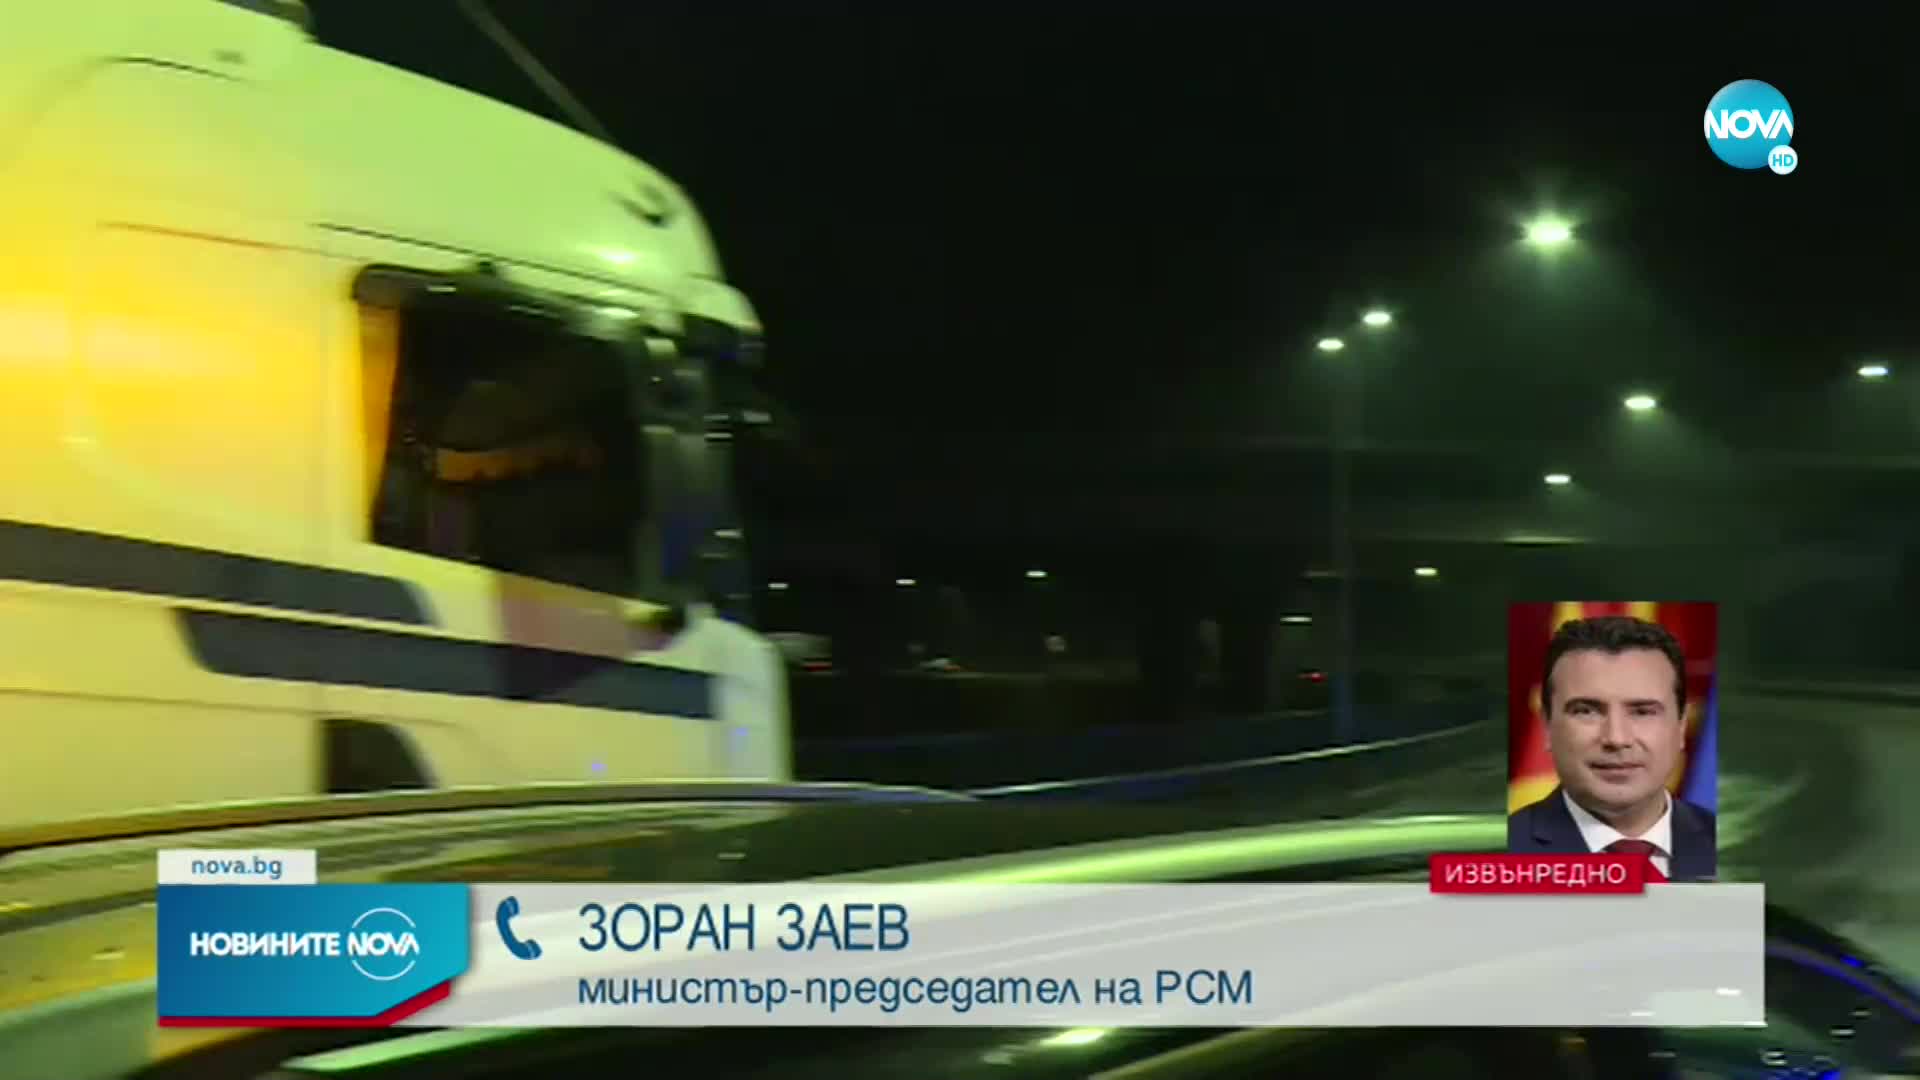 Зоран Заев пред NOVA: Сред жертвите на автобусната катастрофа има и деца